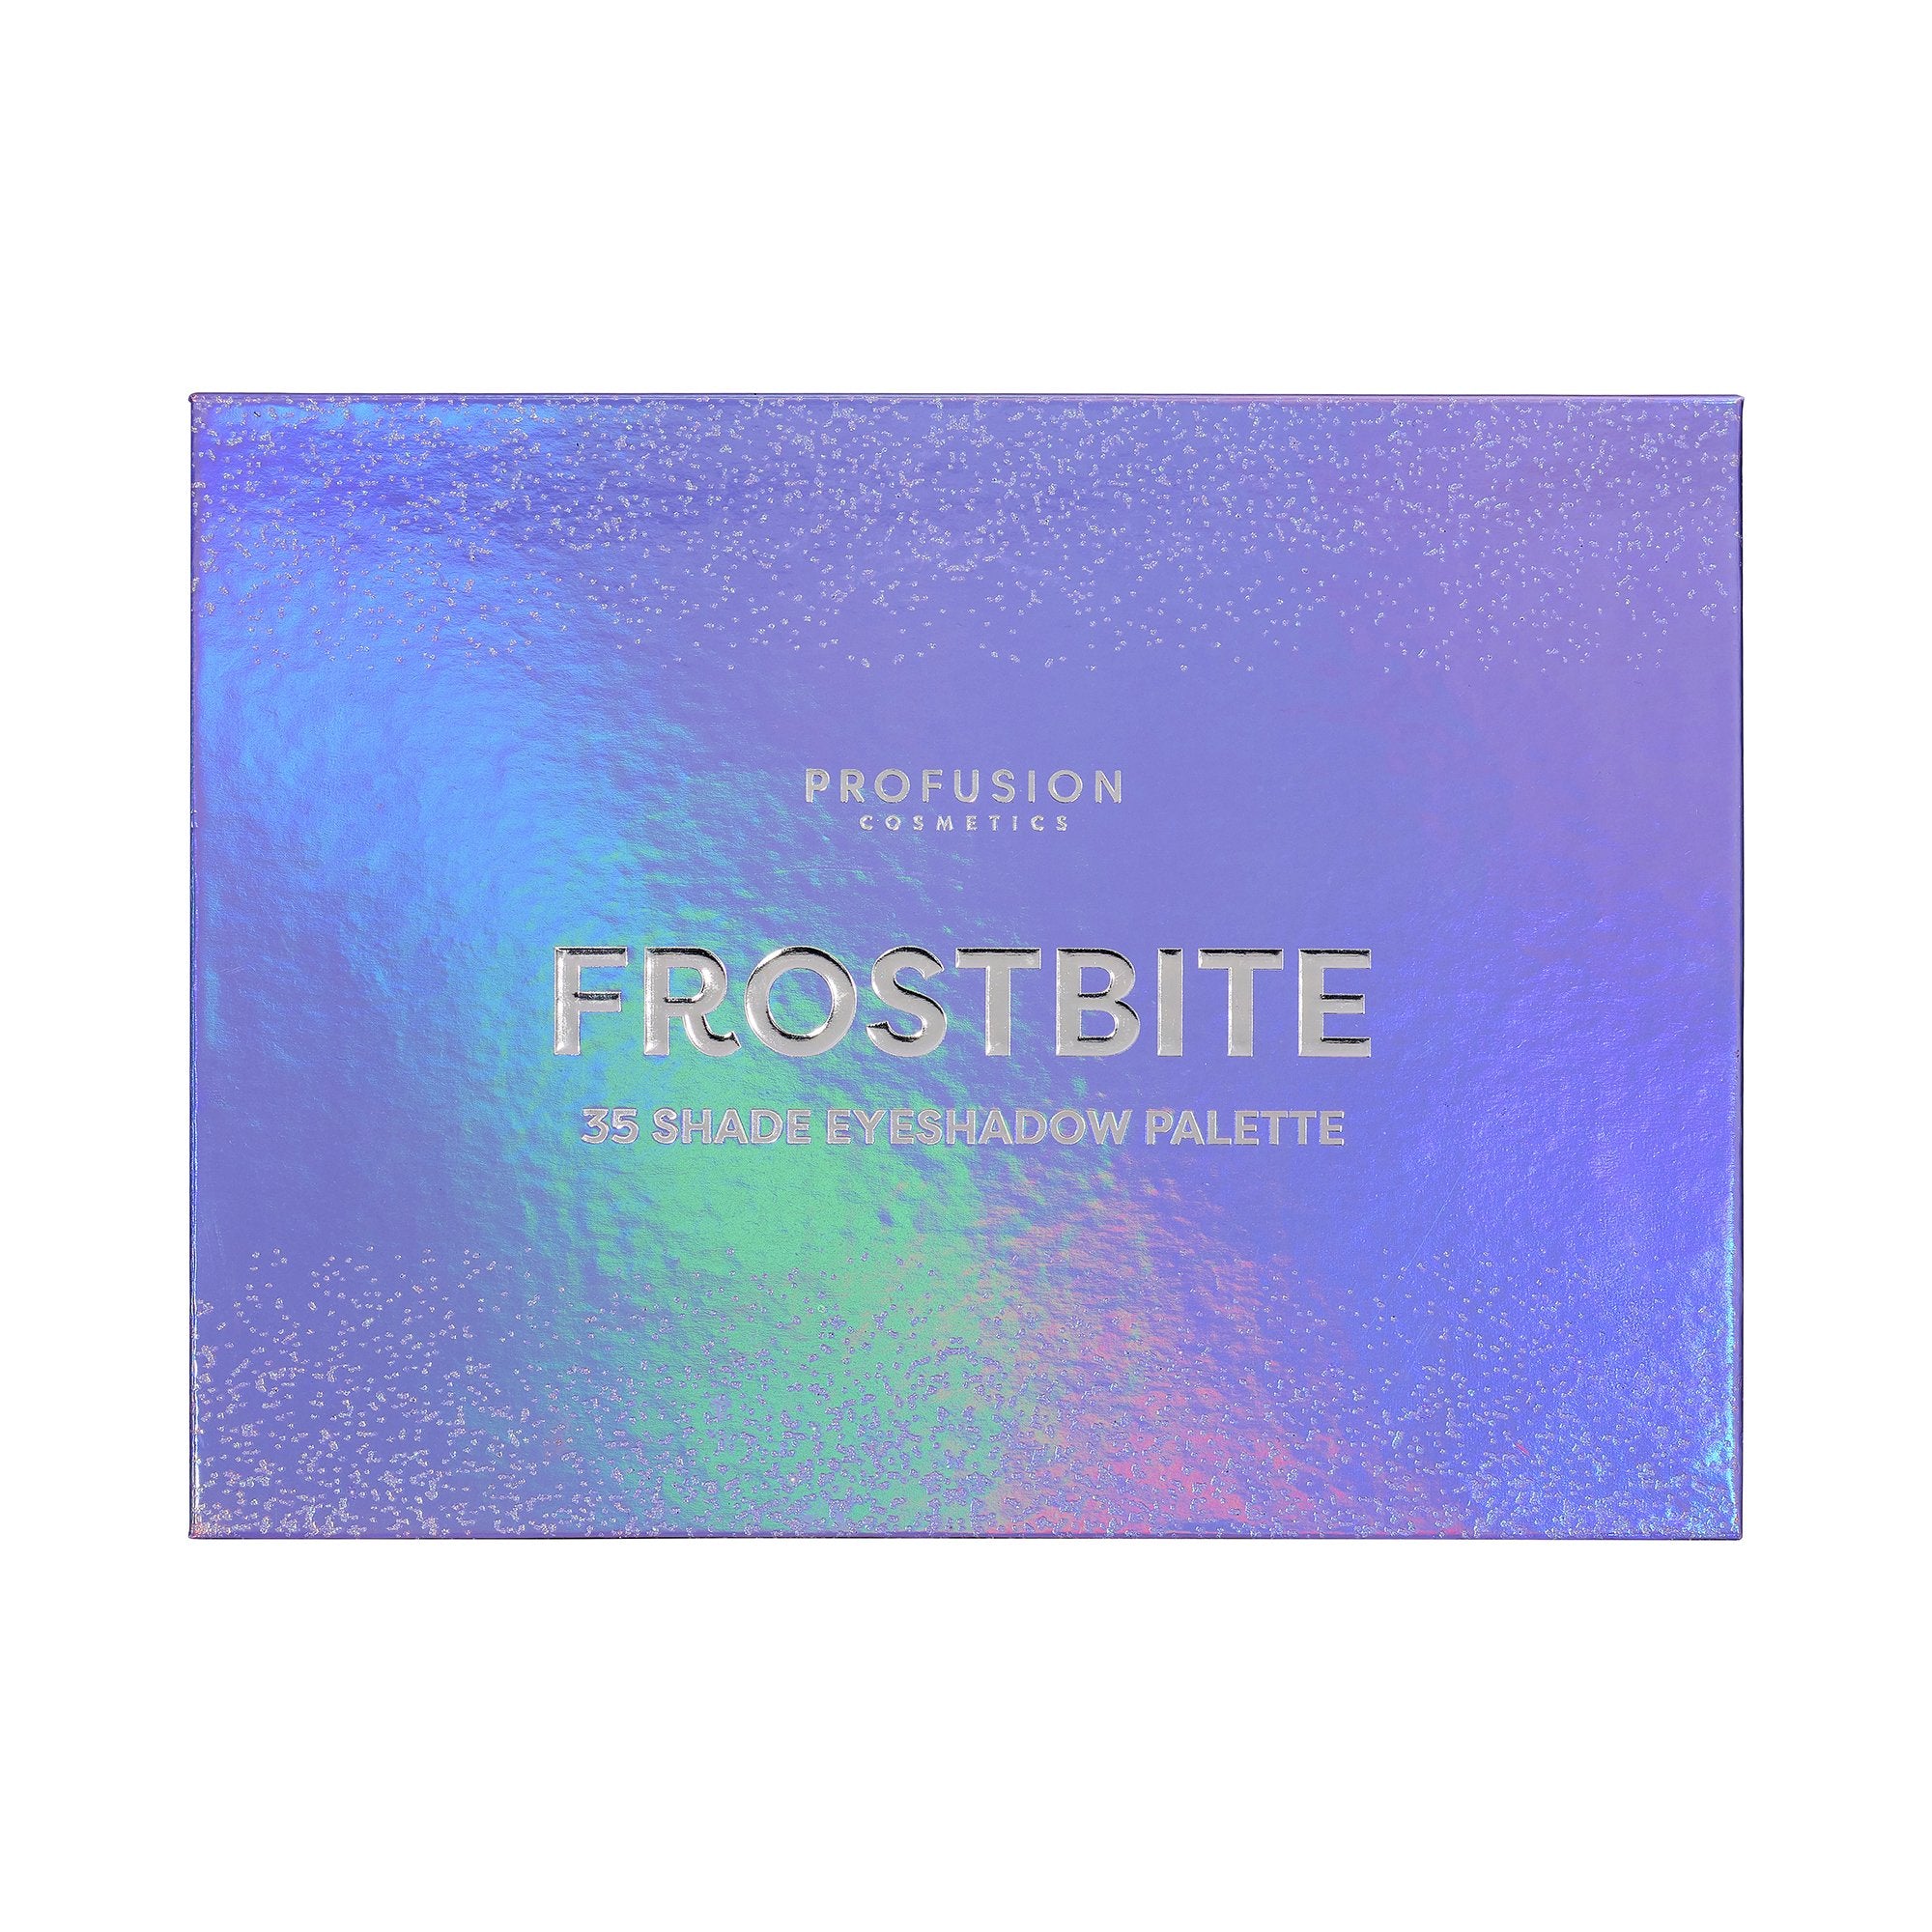 Profusion - Frostbite Palette